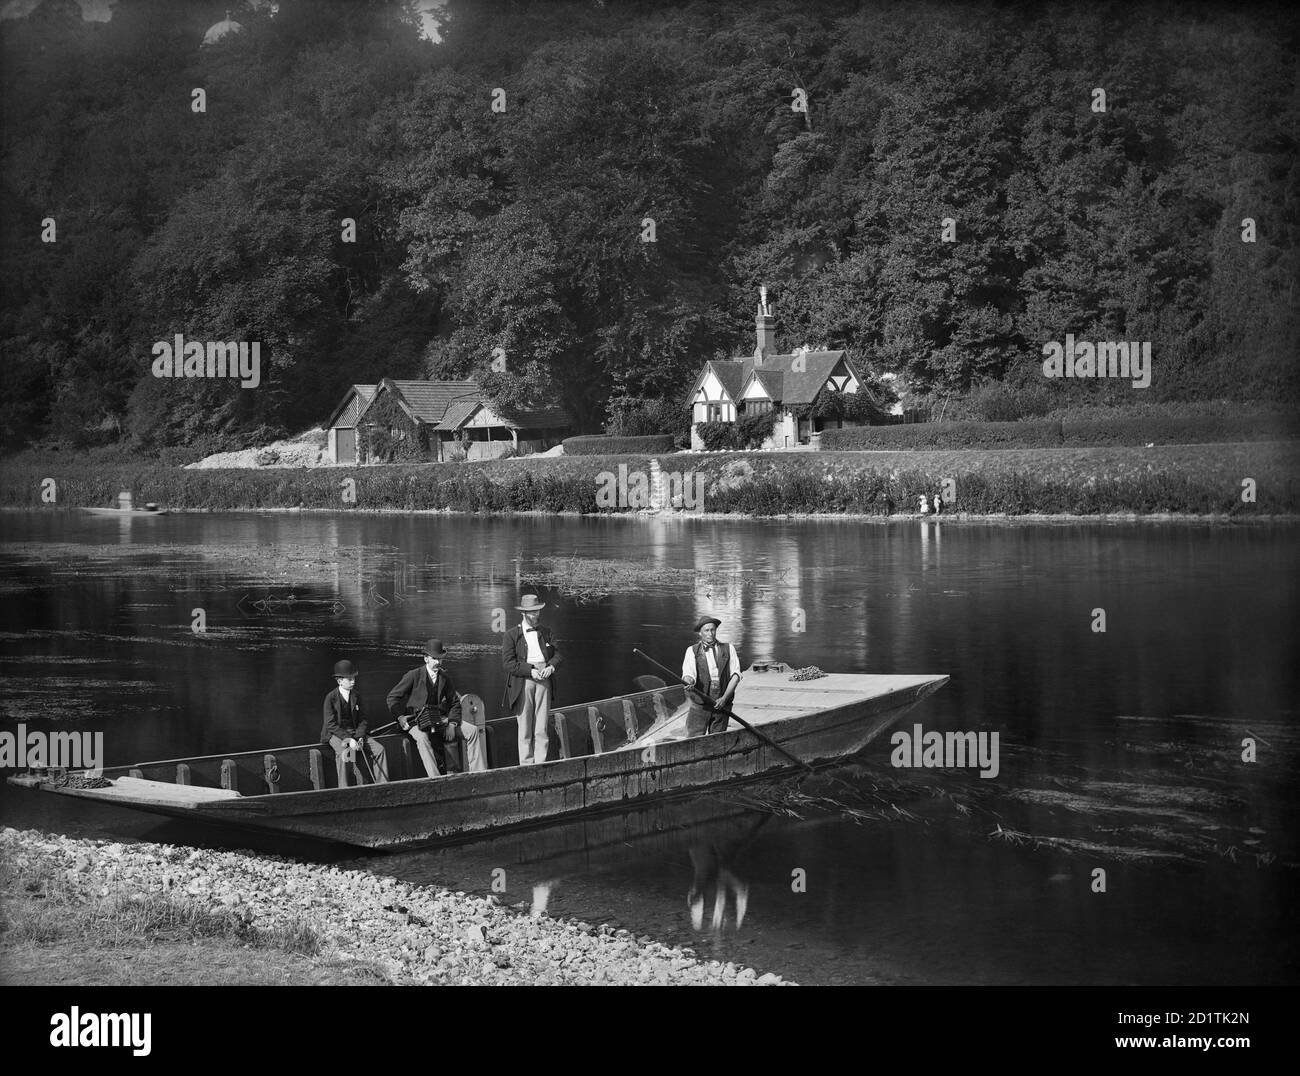 CLIVEDEN FERRY, Cliveden, Taplow, Buckinghamshire. Der Fährmann ist bereit, zwei Männer und einen Jungen über den Fluss zu bringen. Der Mann, der auf der Seite des Bootes sitzt, hält eine Kamera. Die Themse ist an dieser Stelle breit und flach. Henry Taunt, 1885. Stockfoto